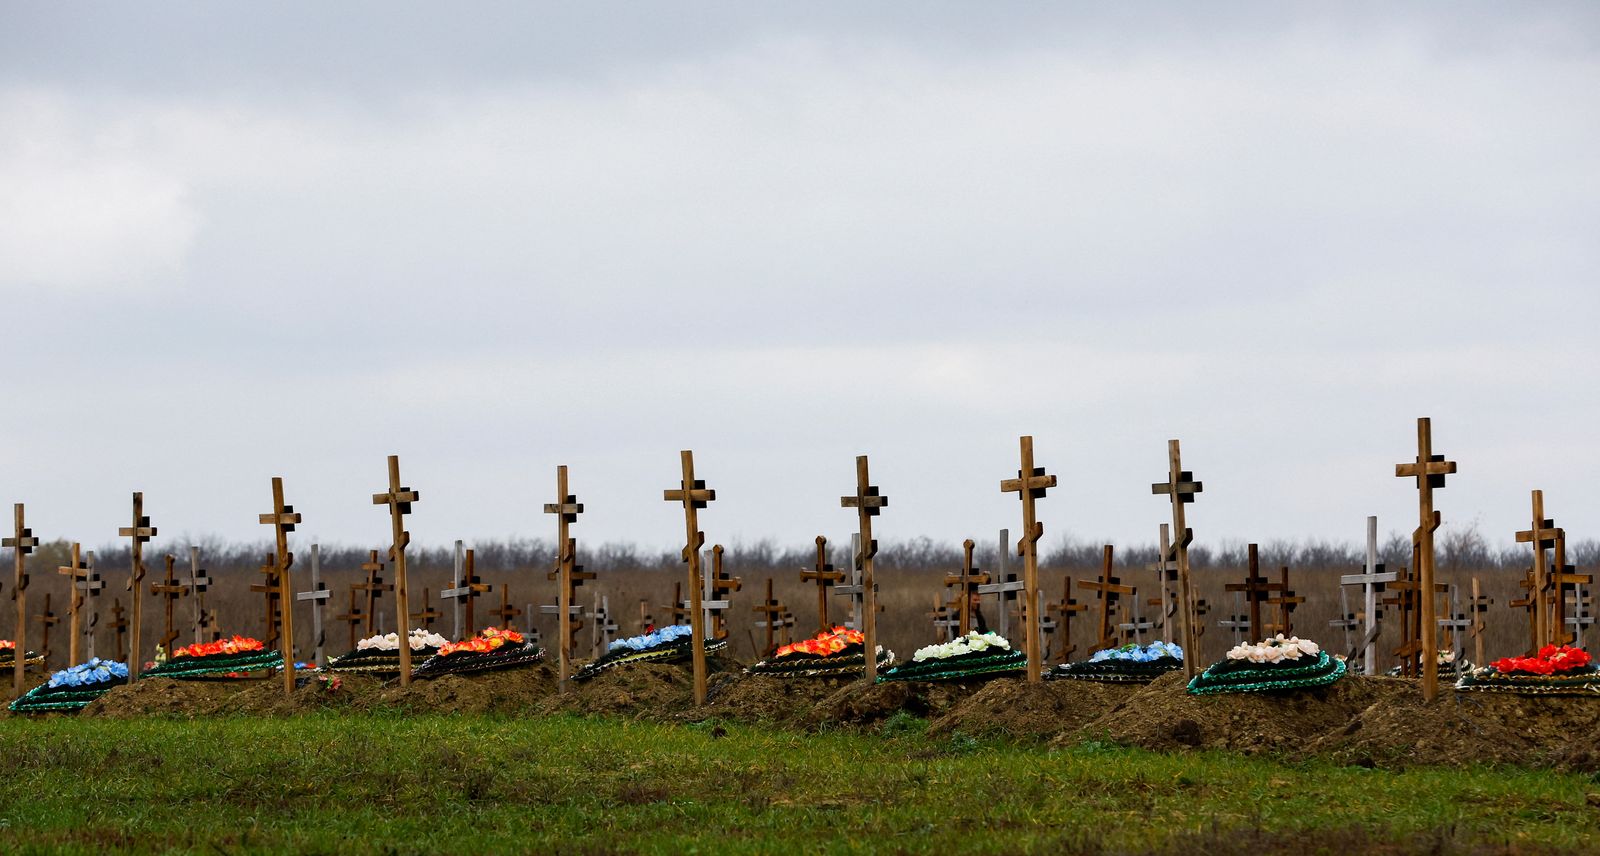 جانب من مقبرة في لوغانسك شرقي أوكرانيا حيث تحتدم المعارك بين أوكرانيا والقوات الموالية لروسيا، 11 نوفمبر 2022 - REUTERS